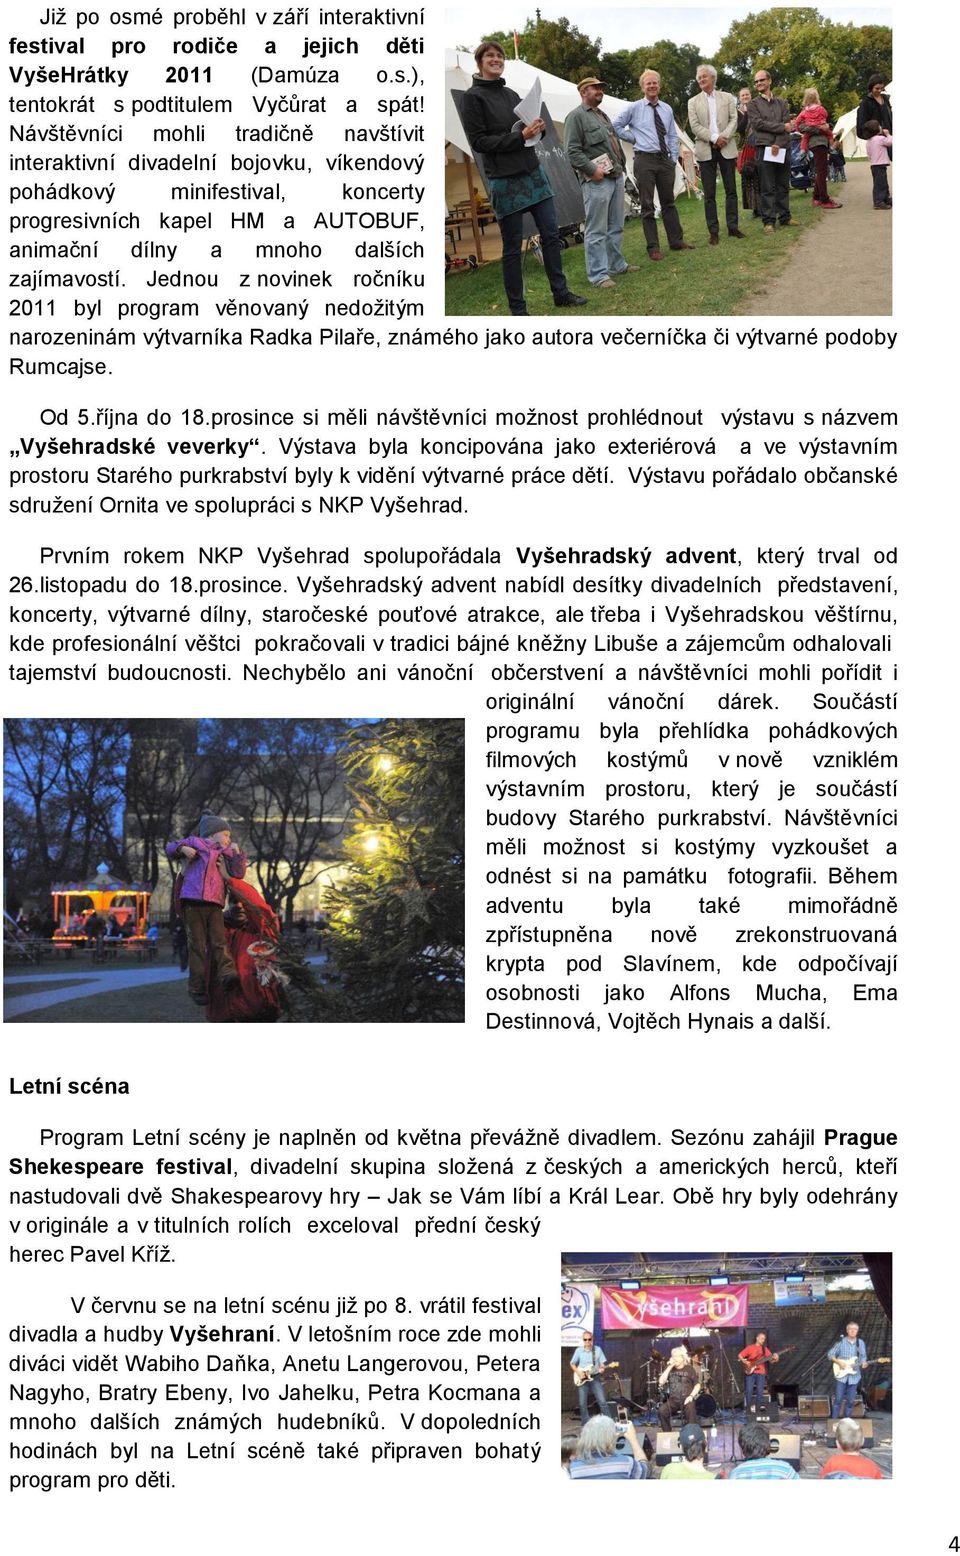 Jednou z novinek ročníku 2011 byl program věnovaný nedoţitým narozeninám výtvarníka Radka Pilaře, známého jako autora večerníčka či výtvarné podoby Rumcajse. Od 5.října do 18.